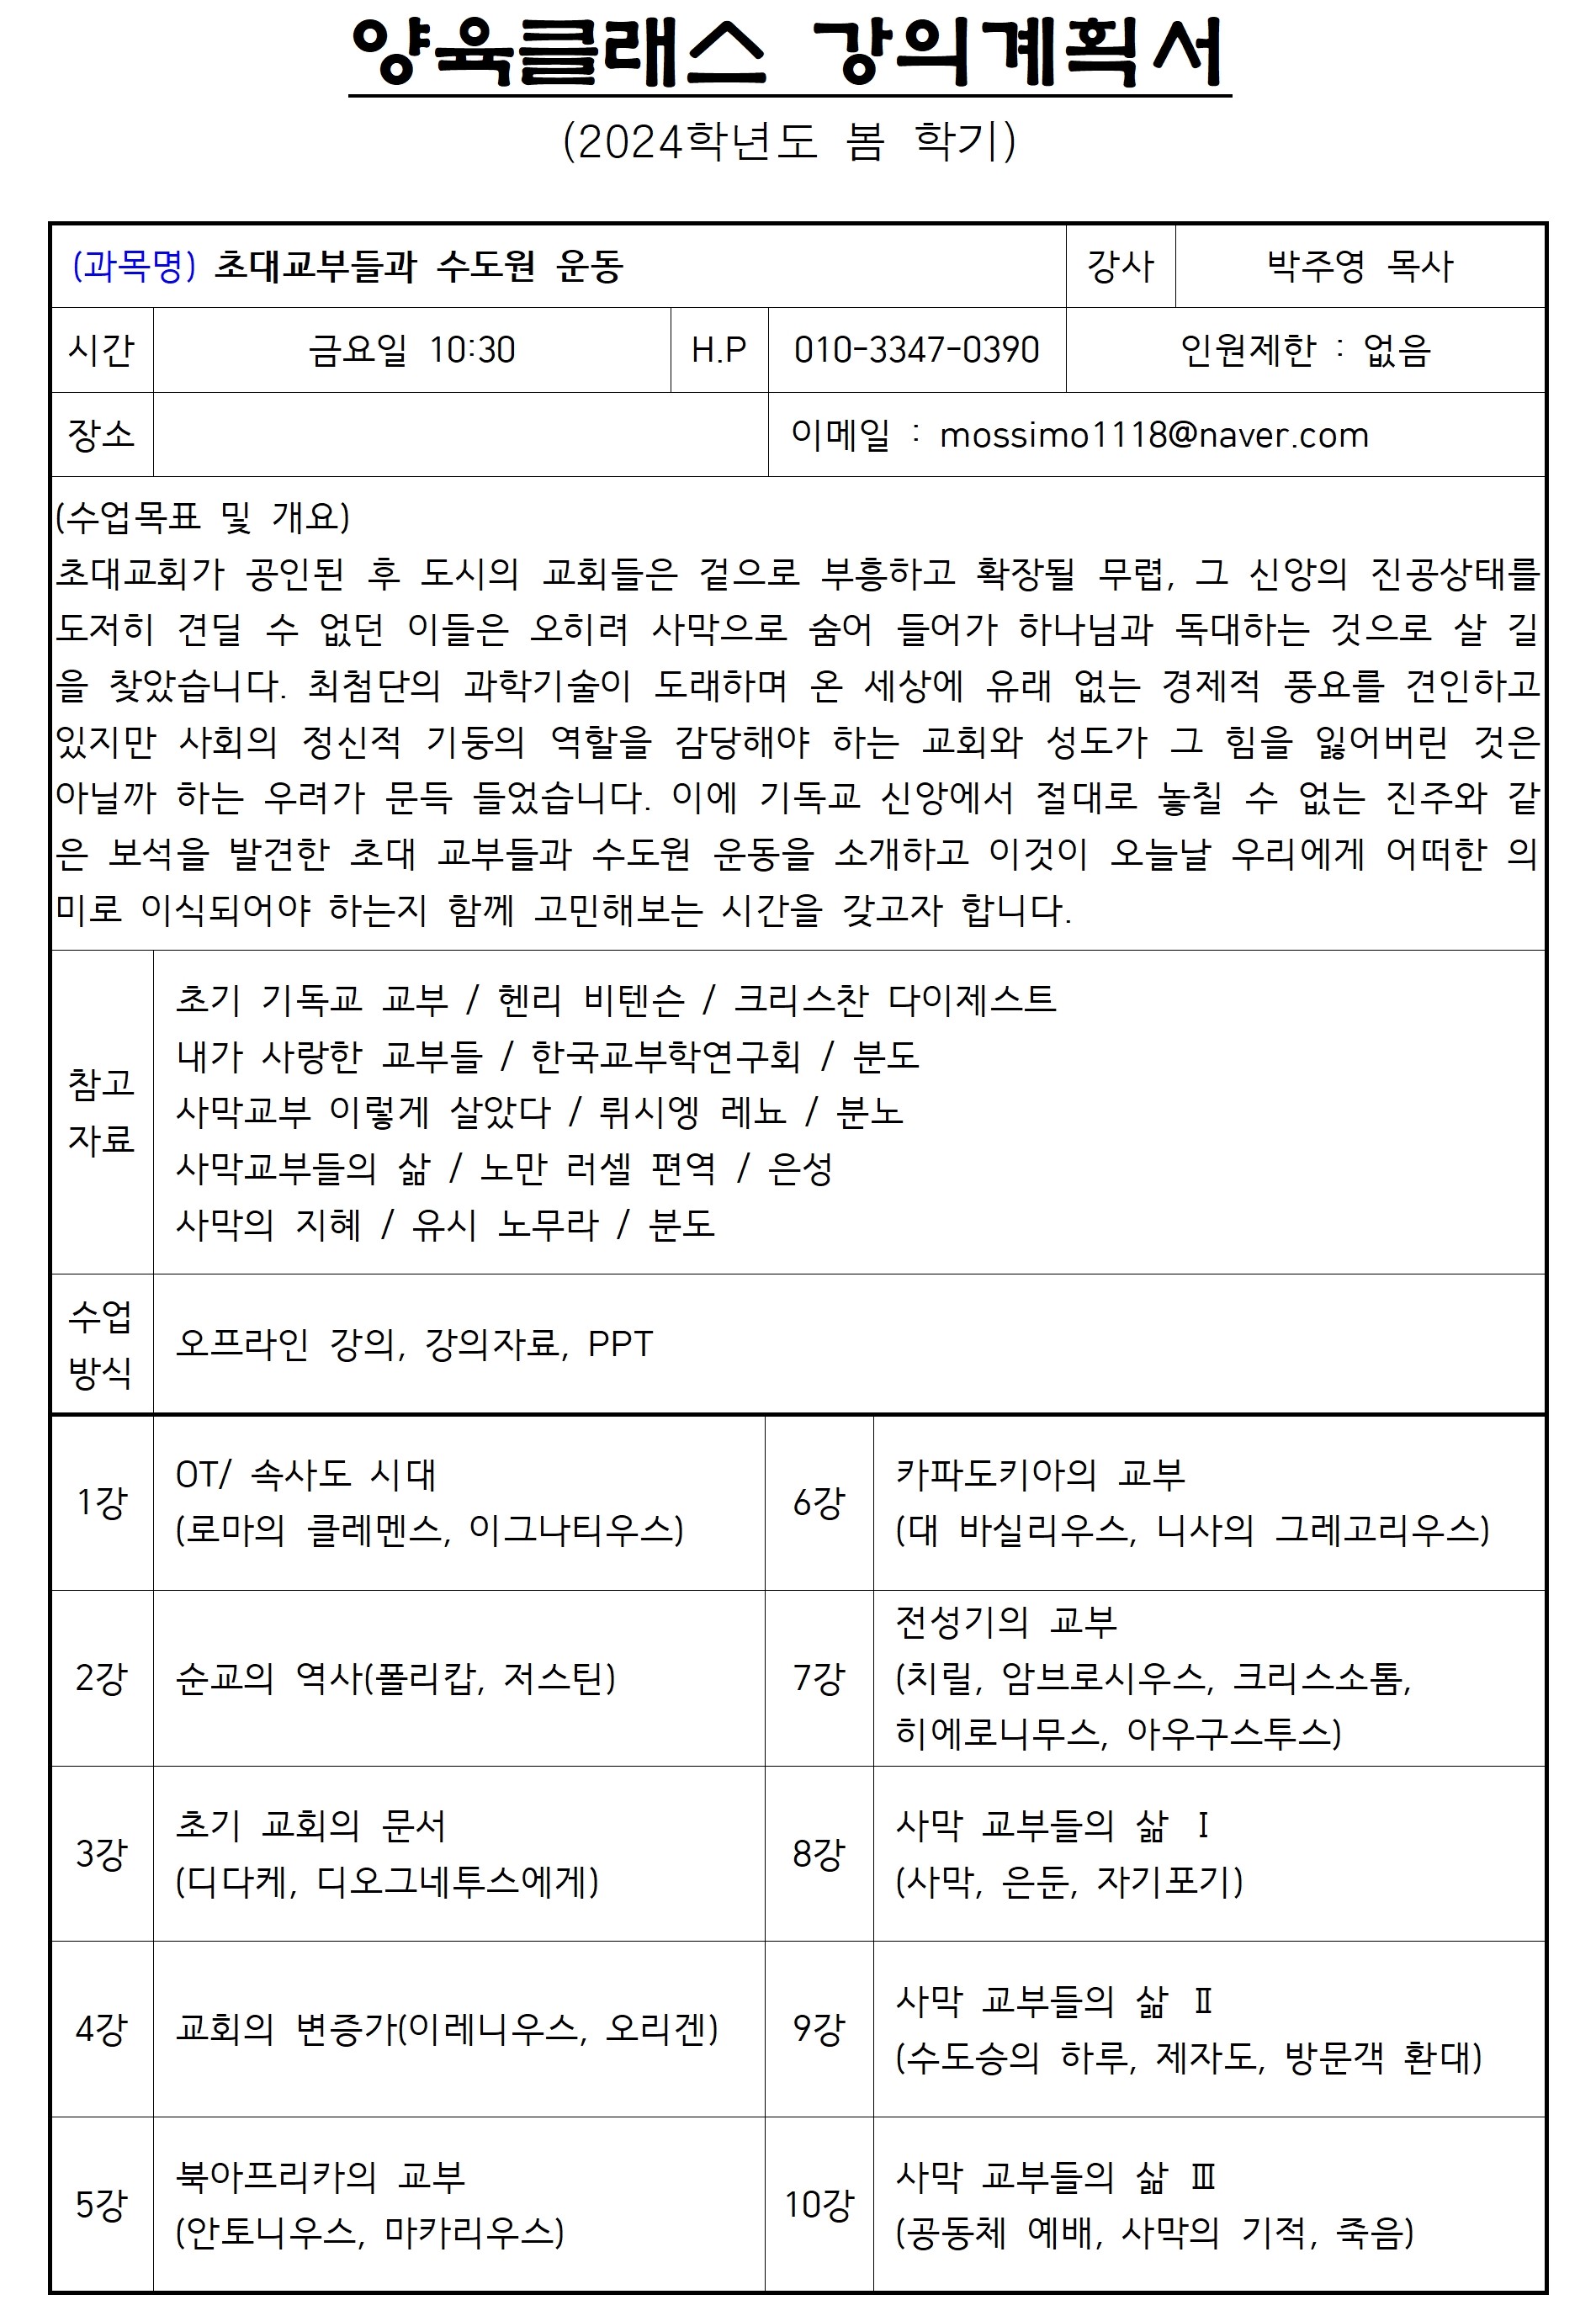 2024-1 양육클래스 강의계획서(박주영)001.jpg